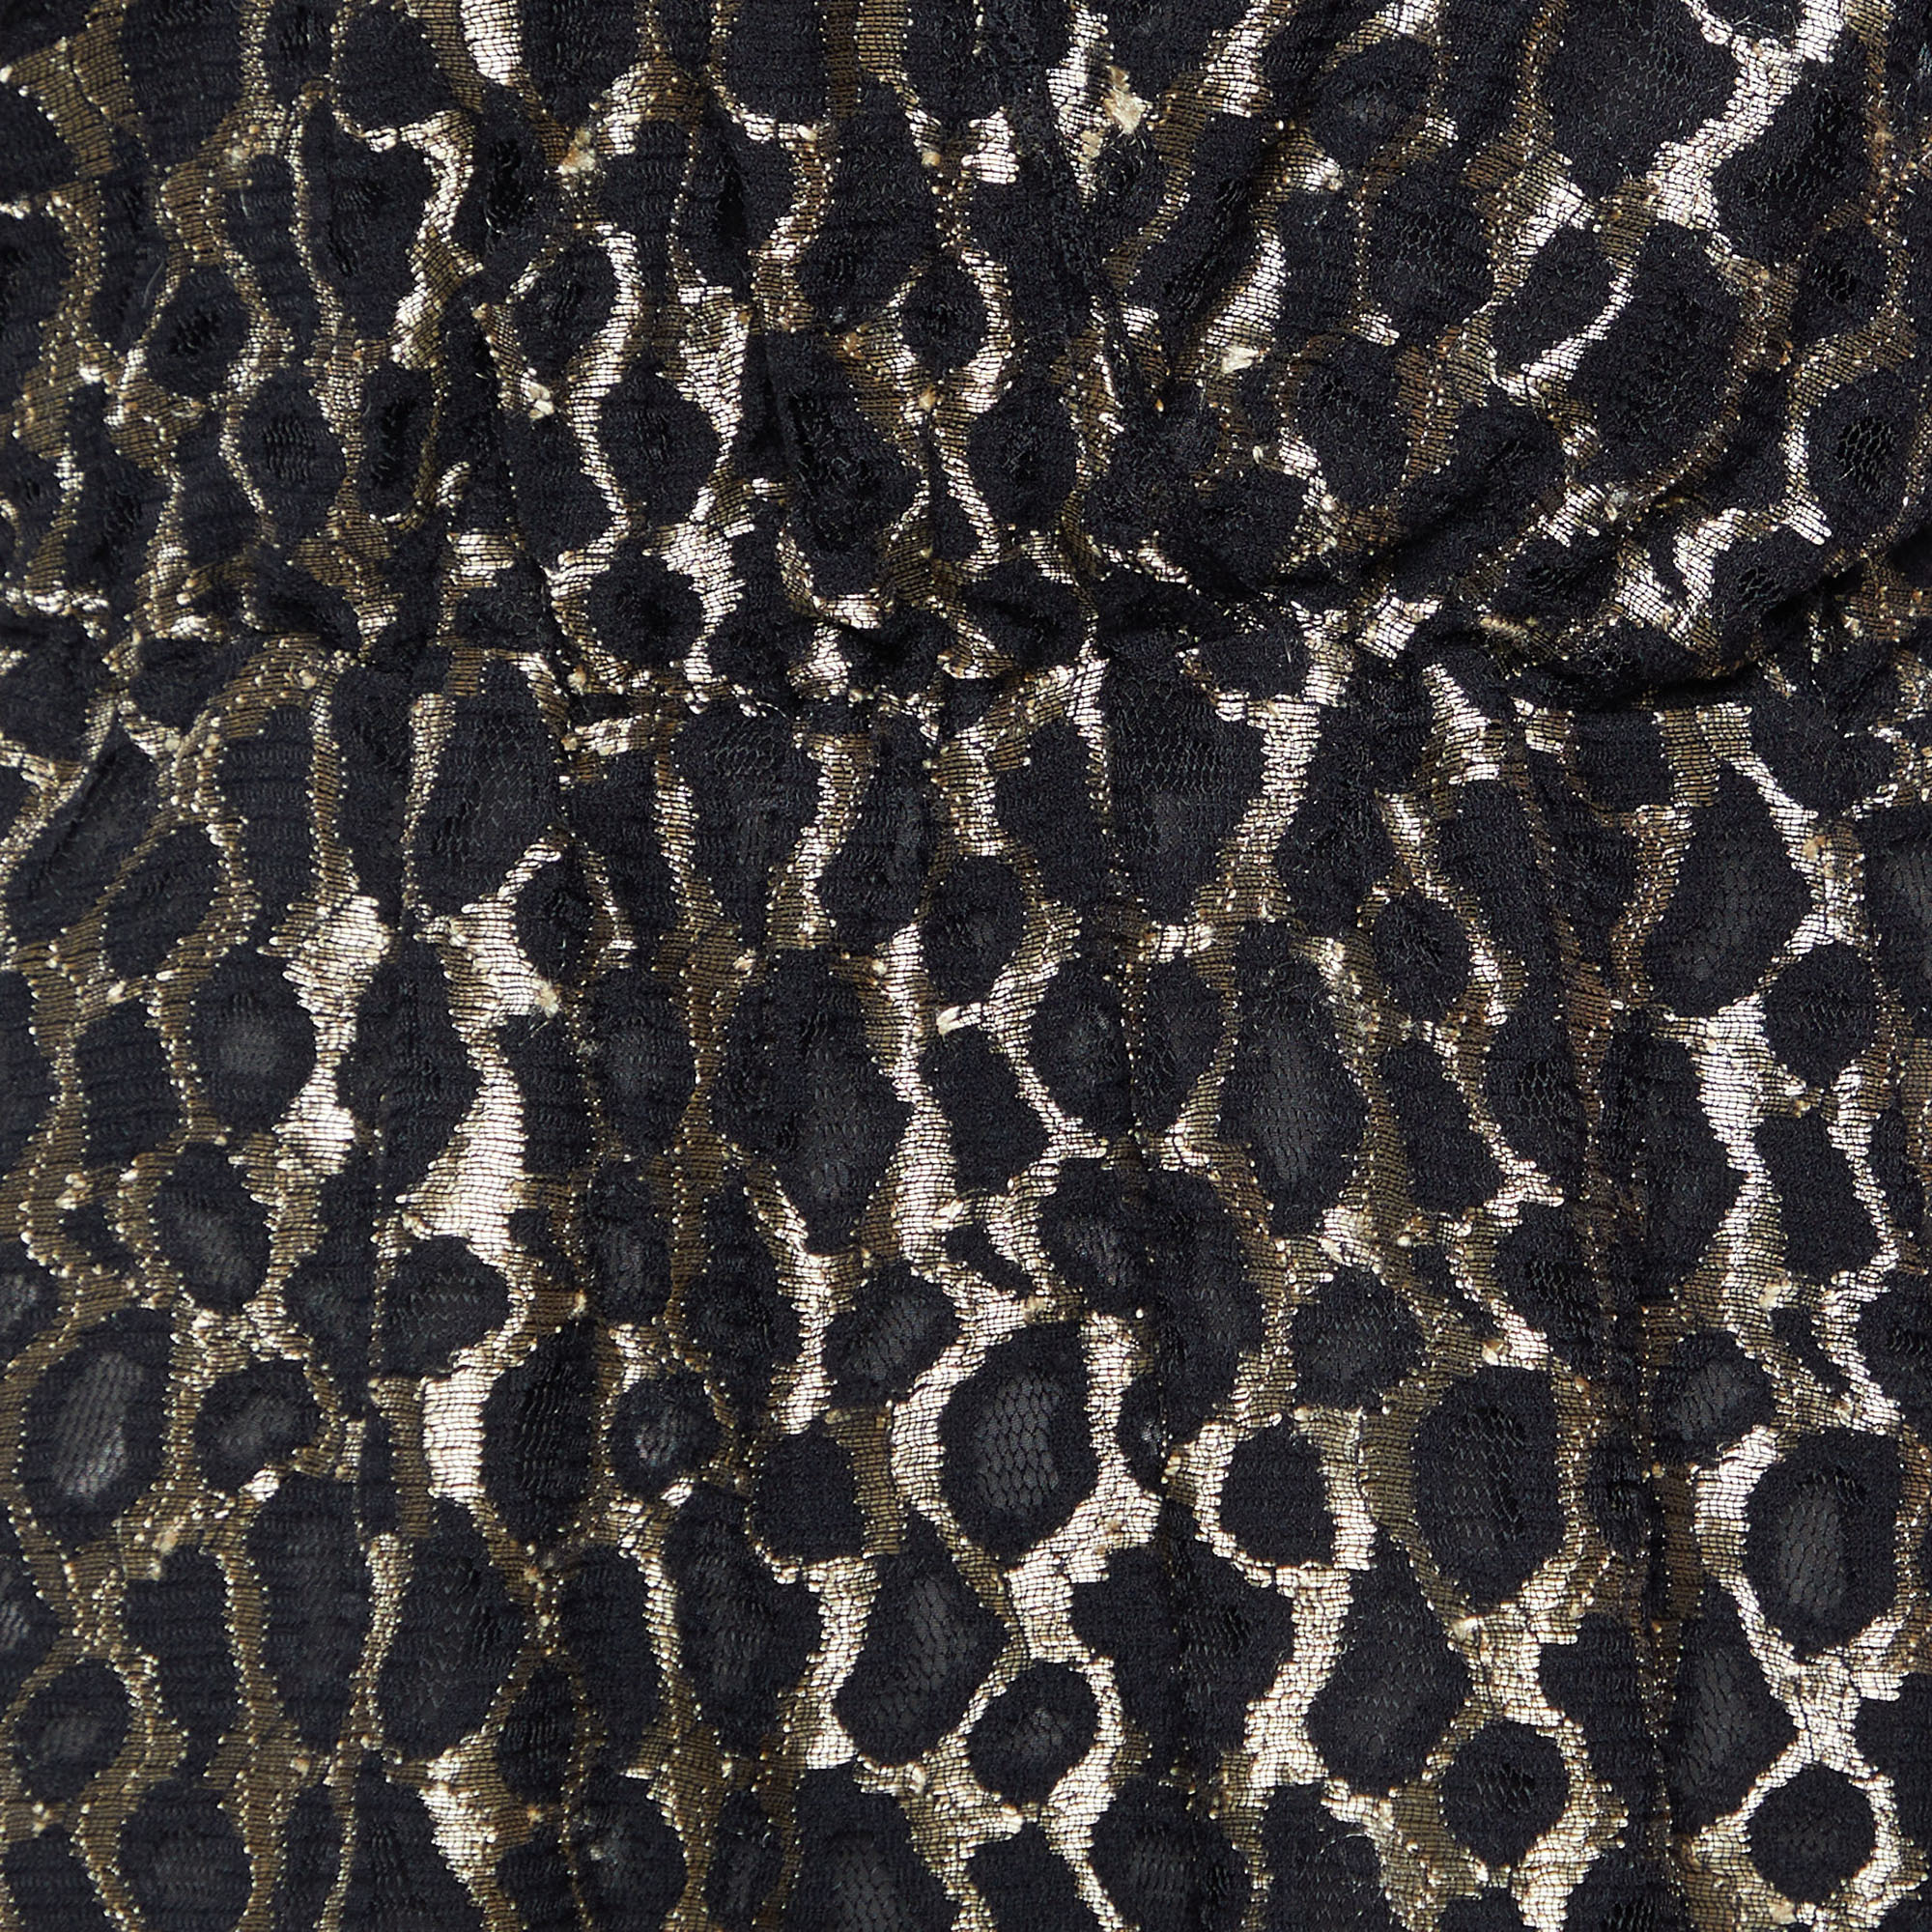 Just Cavalli Black Leopard Lace Ruffle Dress M